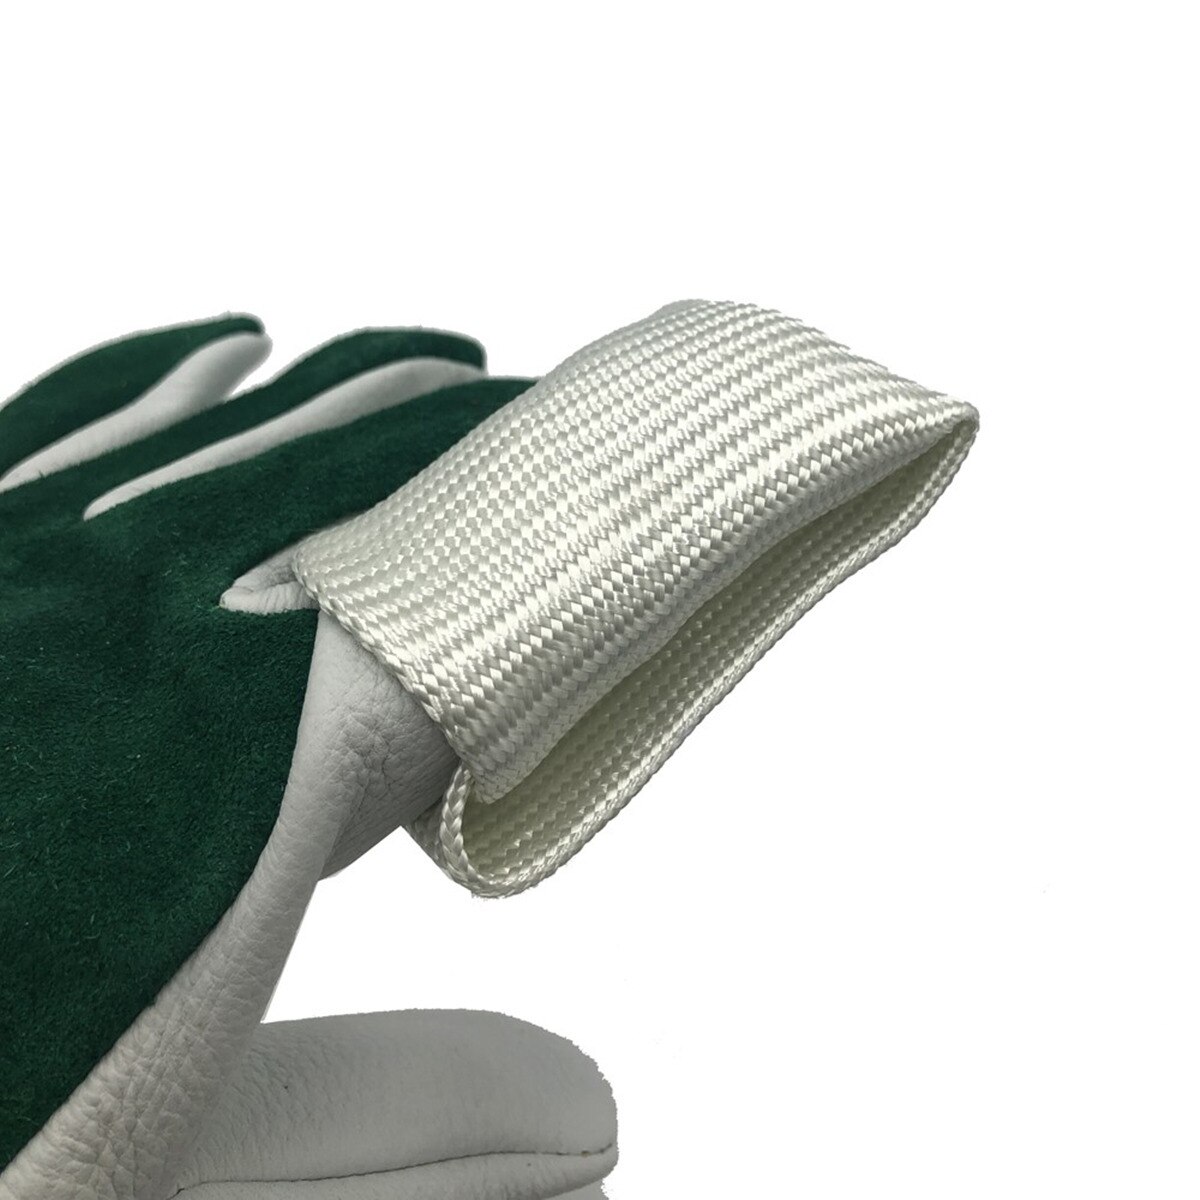 Tig finger svejsning tips tricks varmeskjold svejsning handsker finger beskyttelser til tig svejsning tig handske